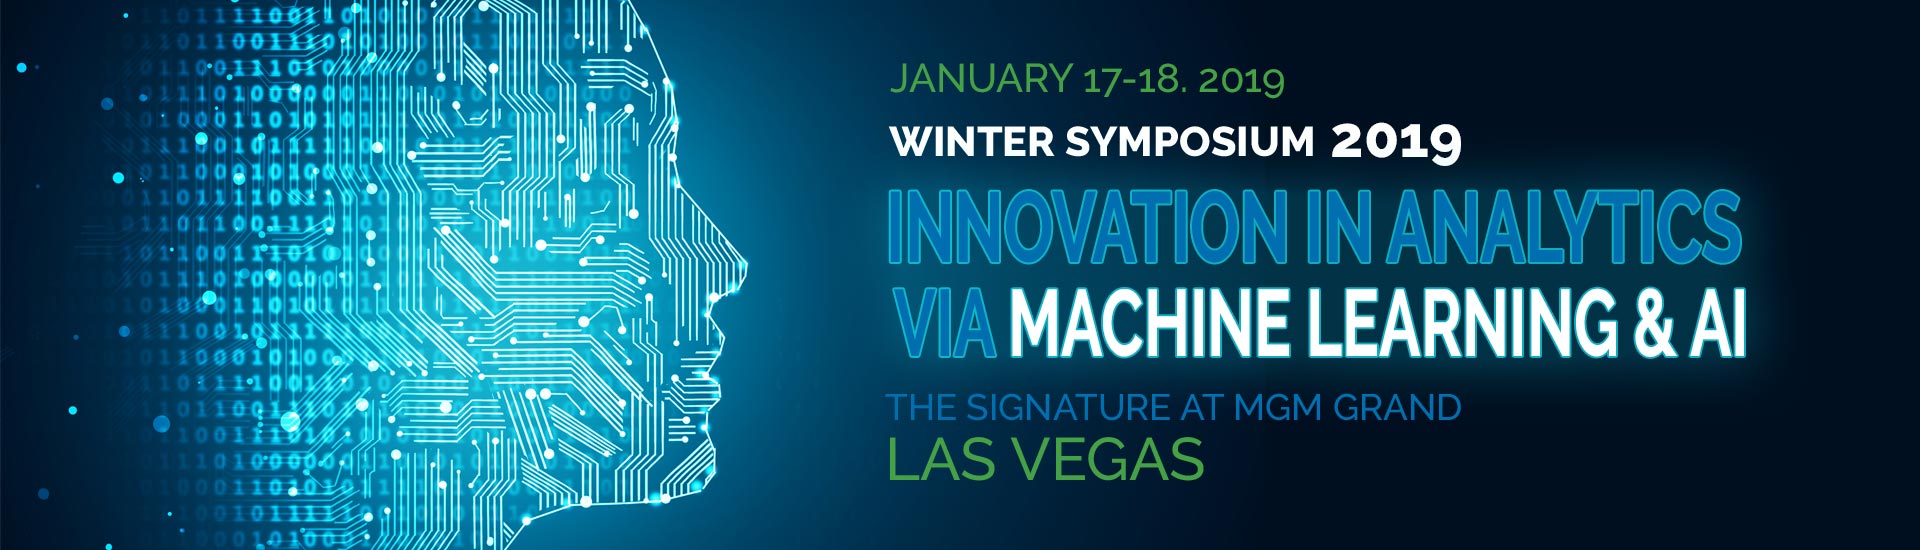 Winter Symposium • Las Vegas, Nevada • January 17-18